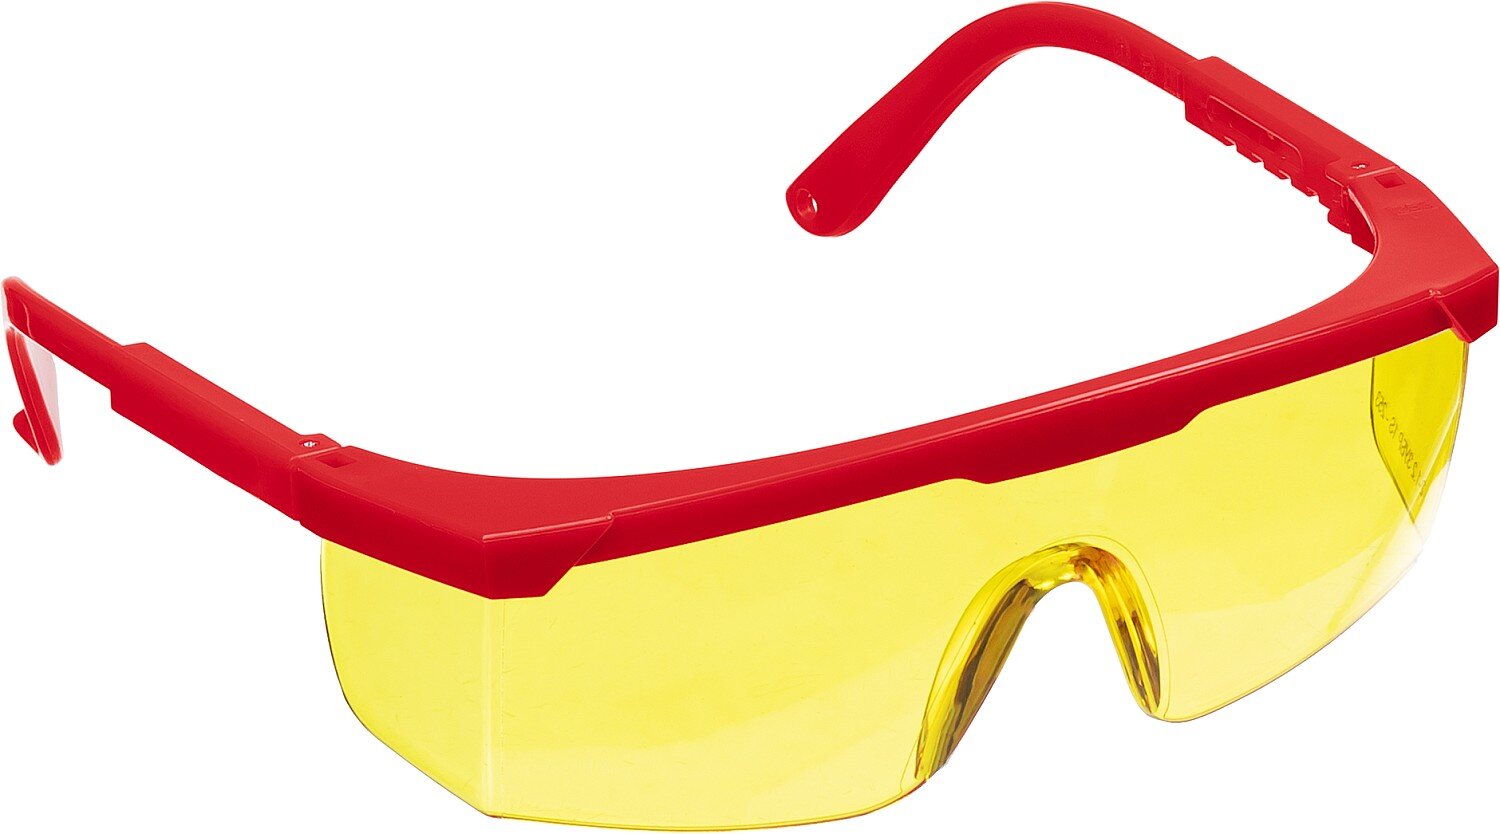 Защитные жёлтые очки Зубр Спектр 5 110329 монолинза с дополнительной боковой защитой, открытого типа защитные жёлтые очки зубр спектр 5 110329 монолинза с дополнительной боковой защитой открытого типа